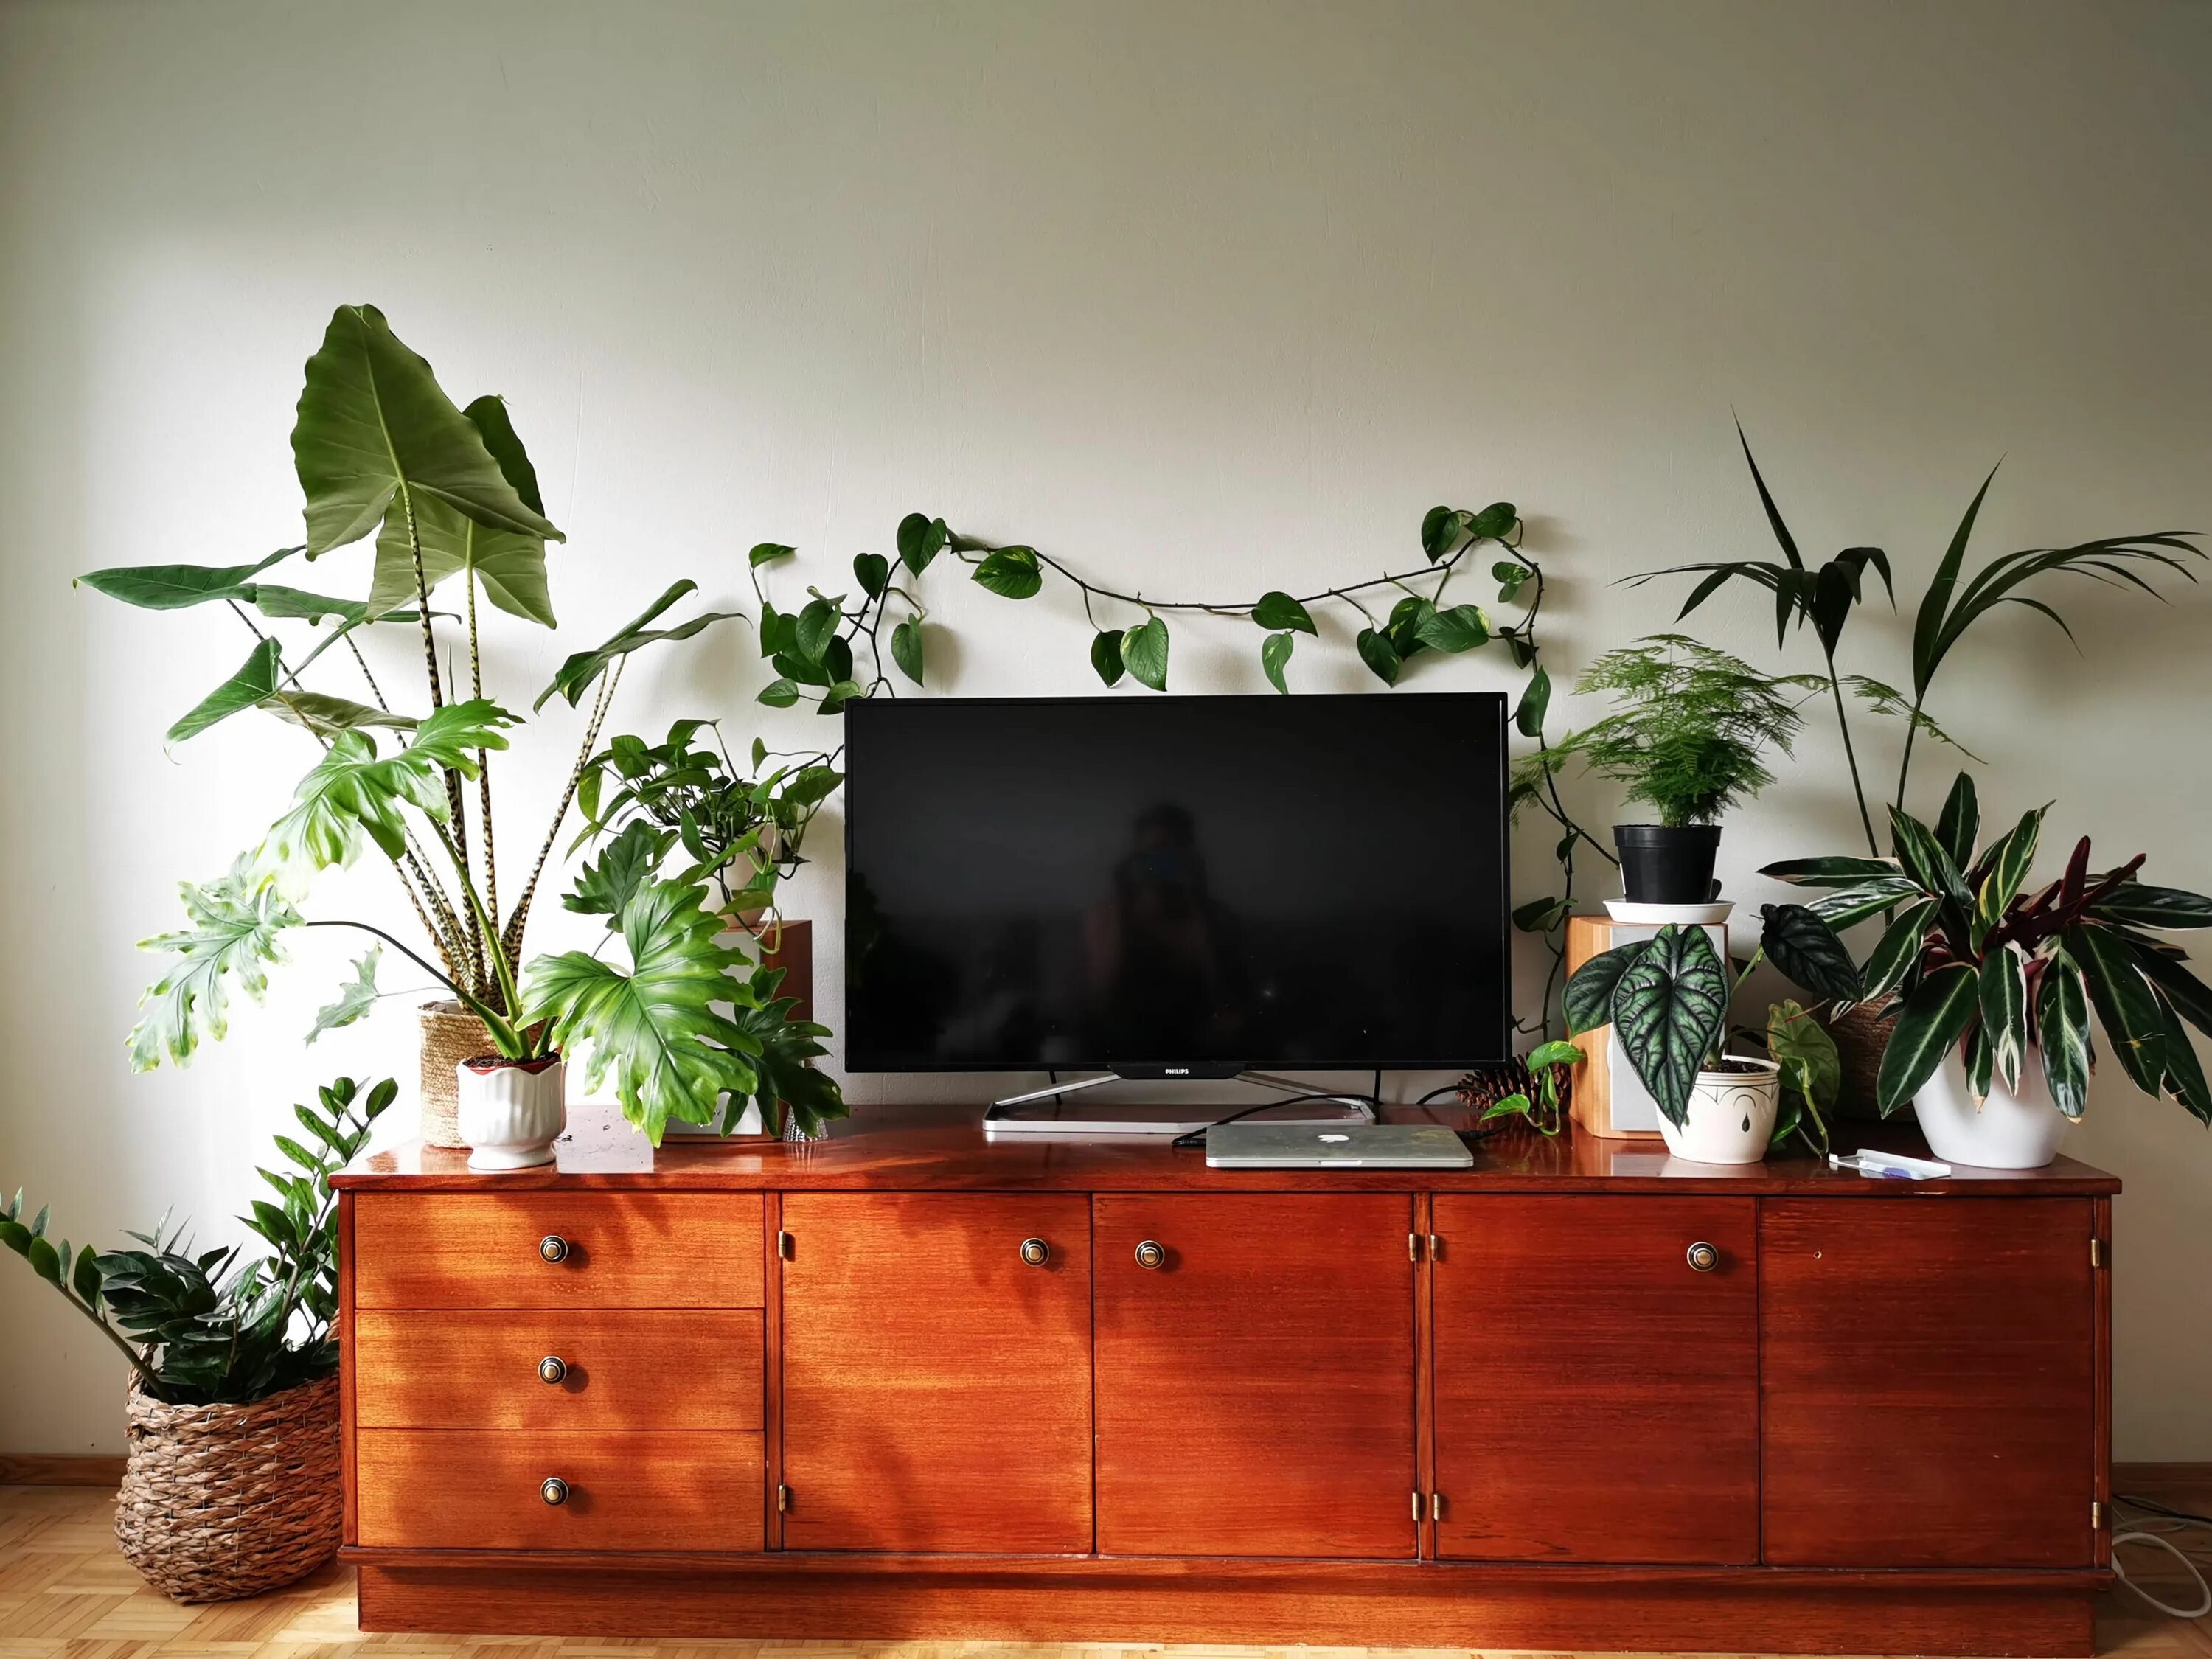 Растения над телевизором. Телевизор и комнатные растения. Полки с растениями у телевизора. Цветы в телевизоре. Plants tv